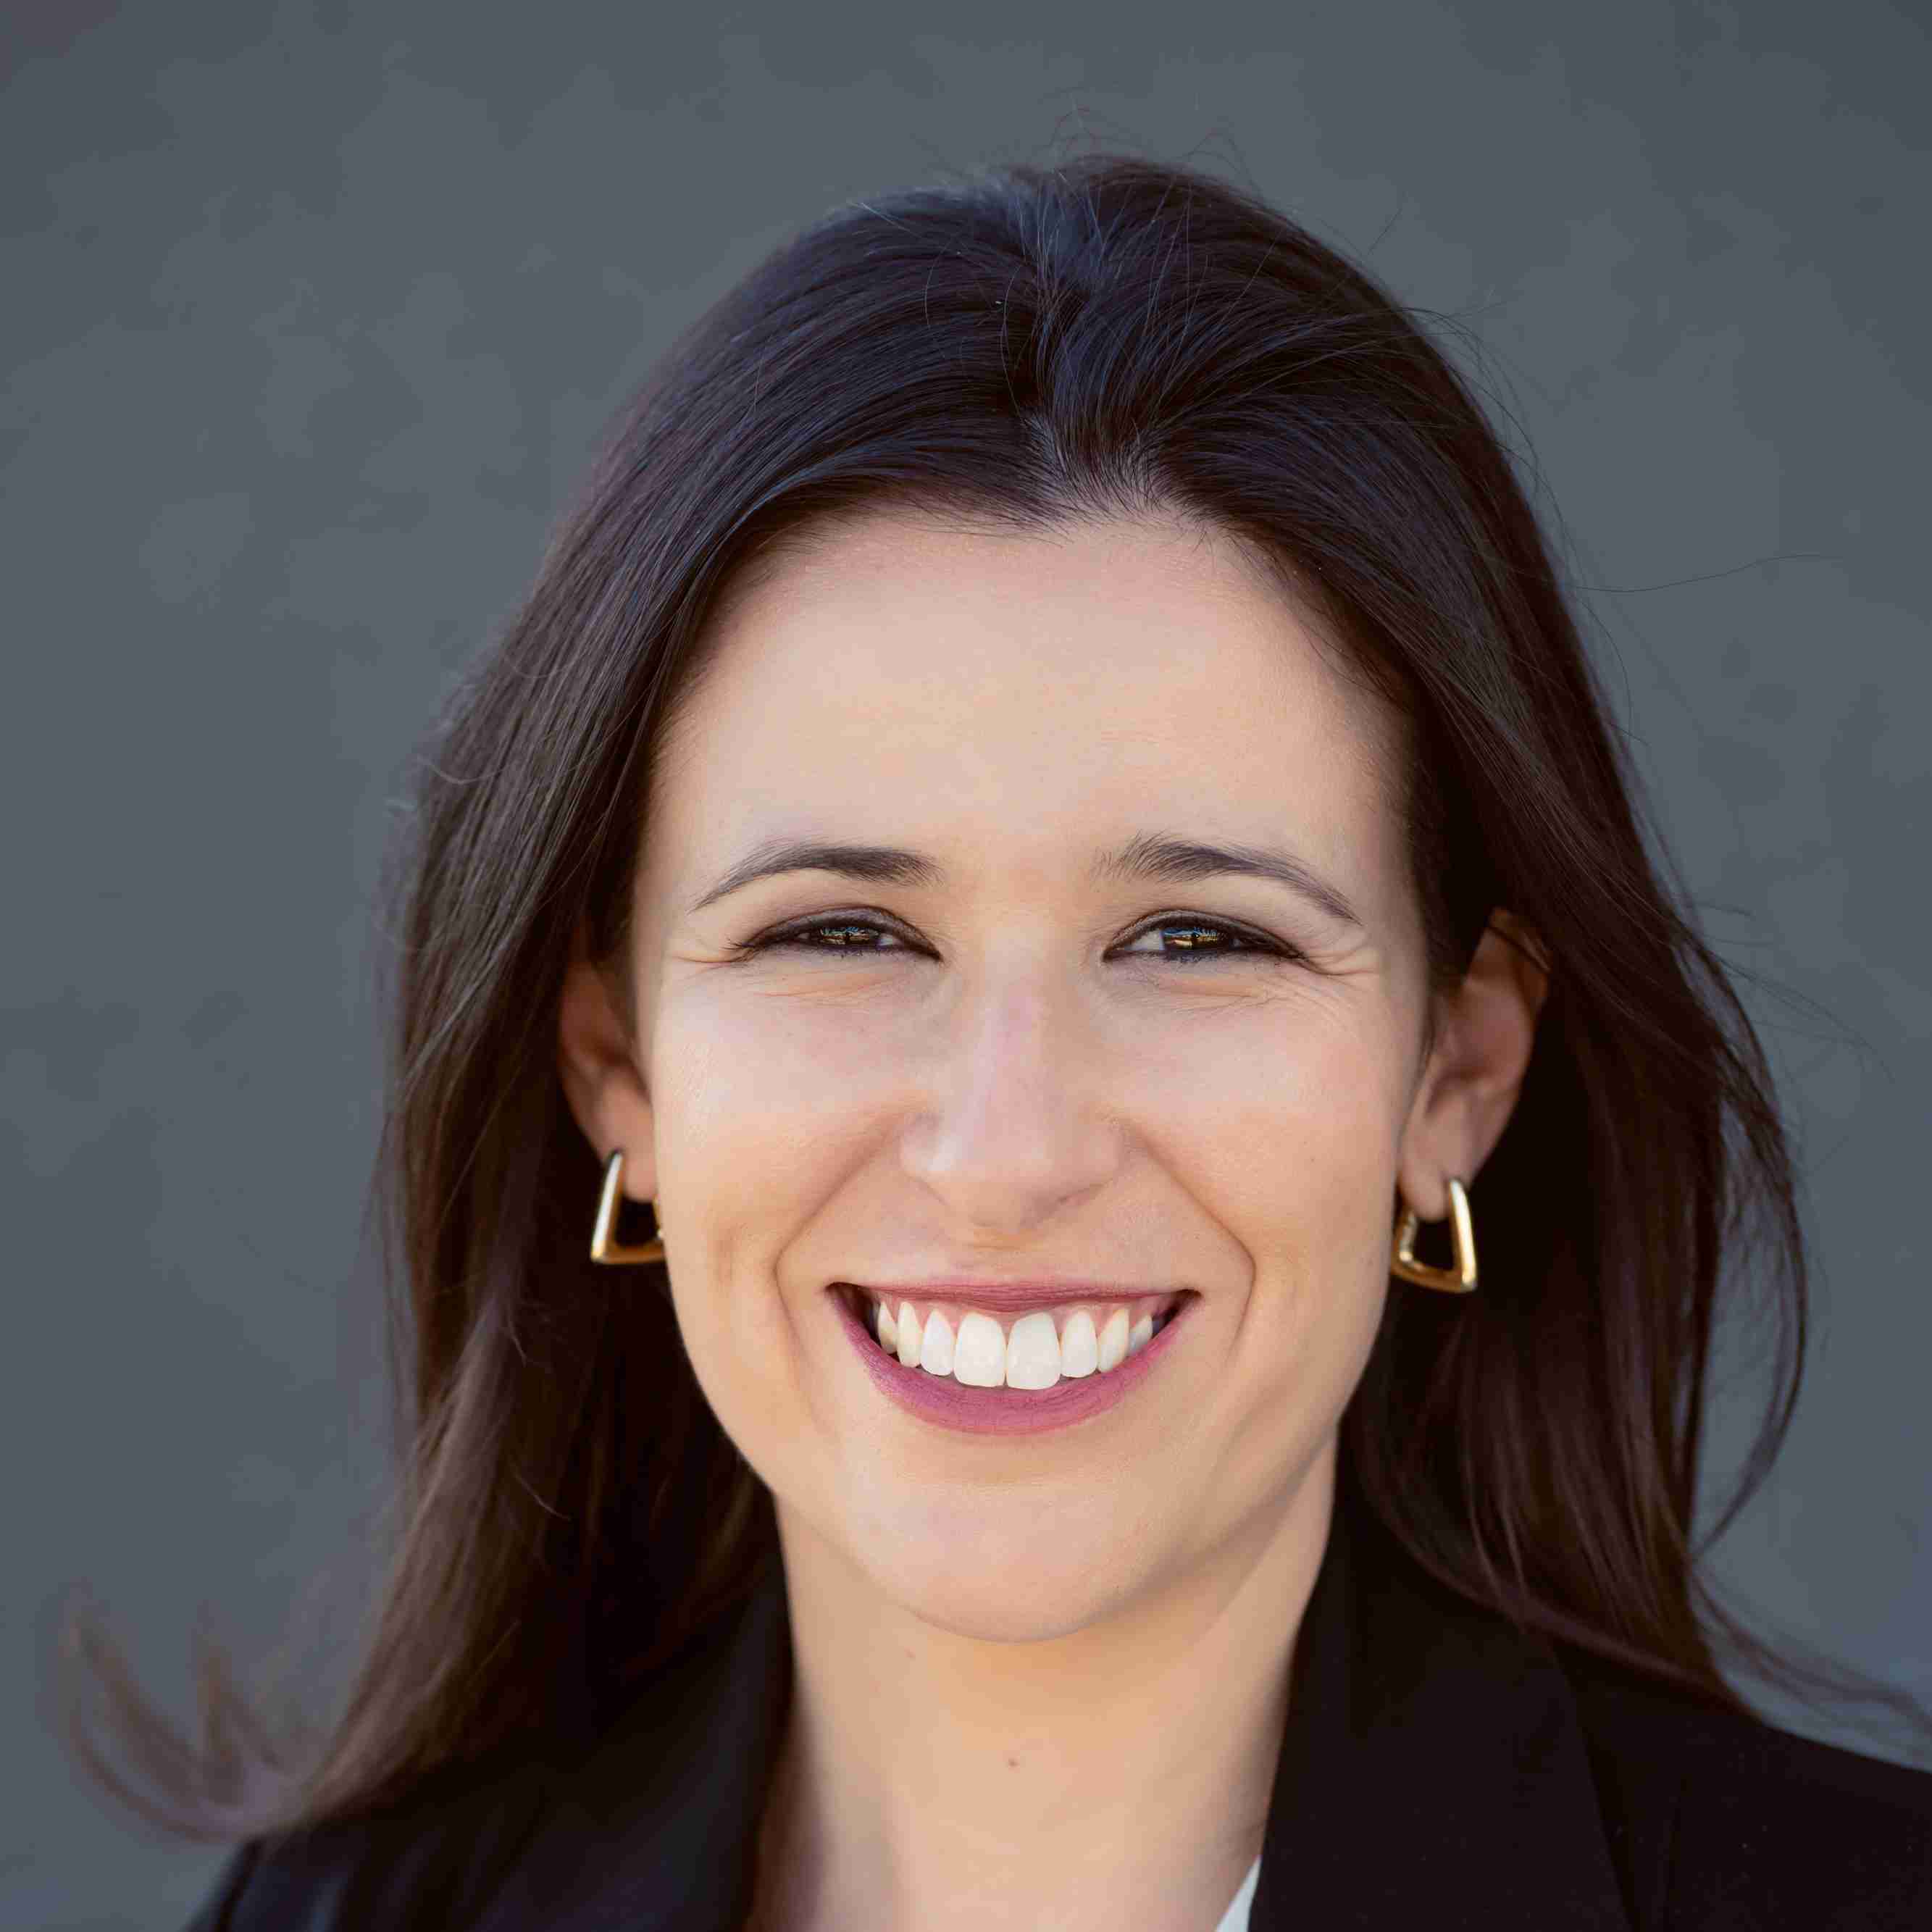 Profile image of Dr Marina Duarte